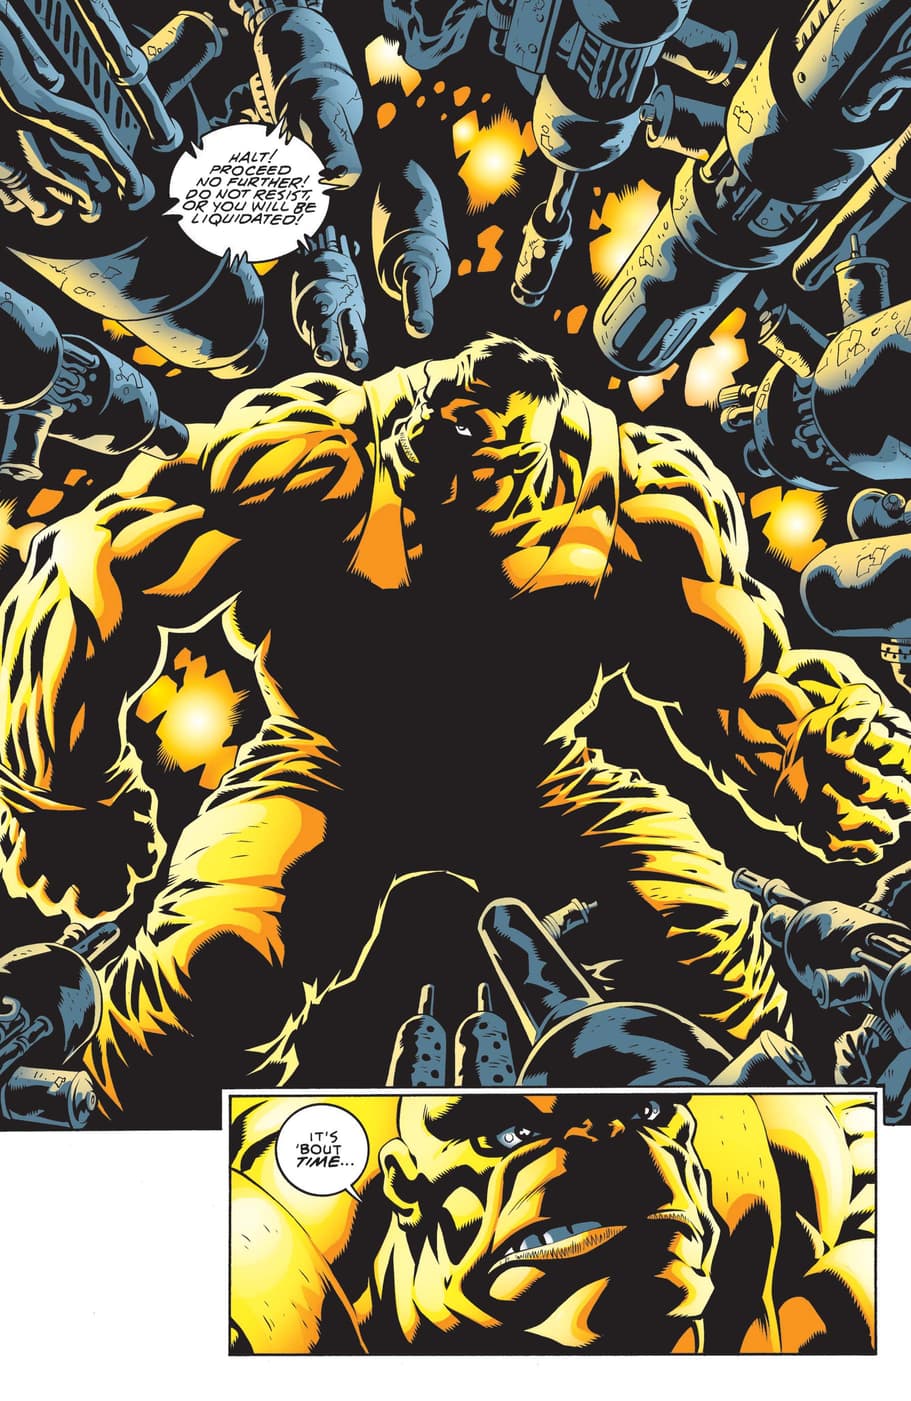 Hulk (1999) #21